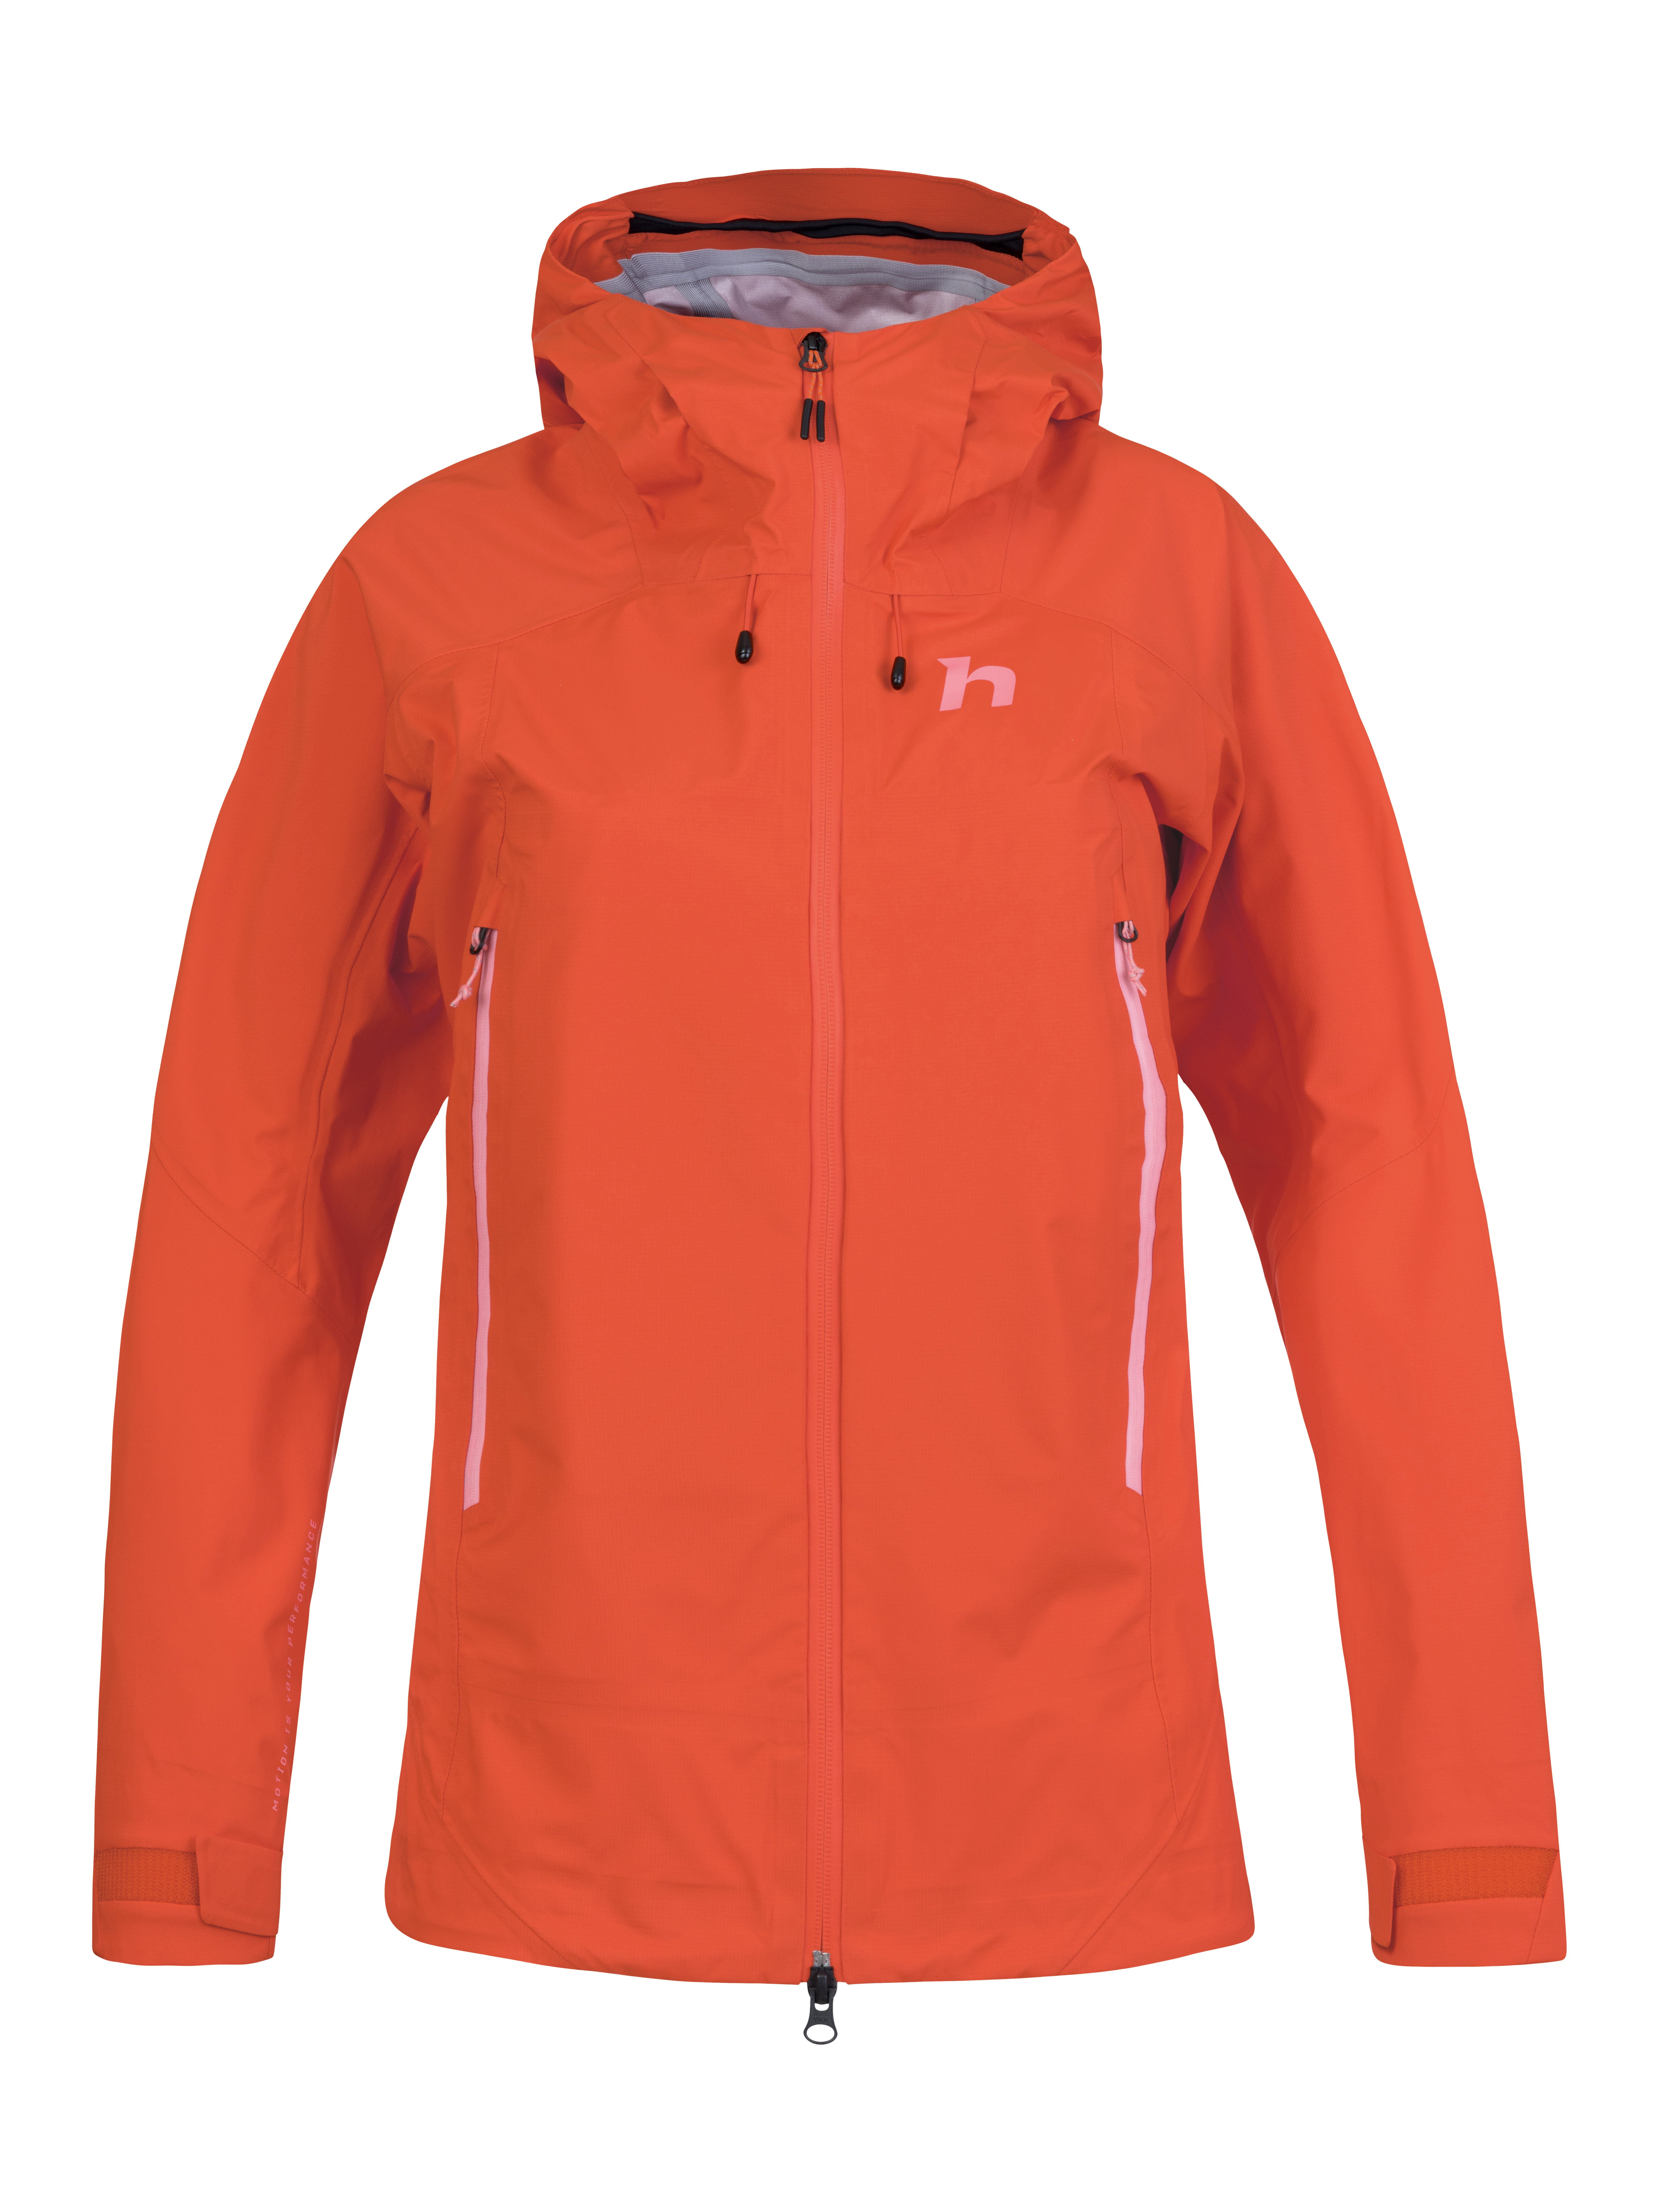 Women's hardshell jacket Hannah ADELAIDE spicy orange